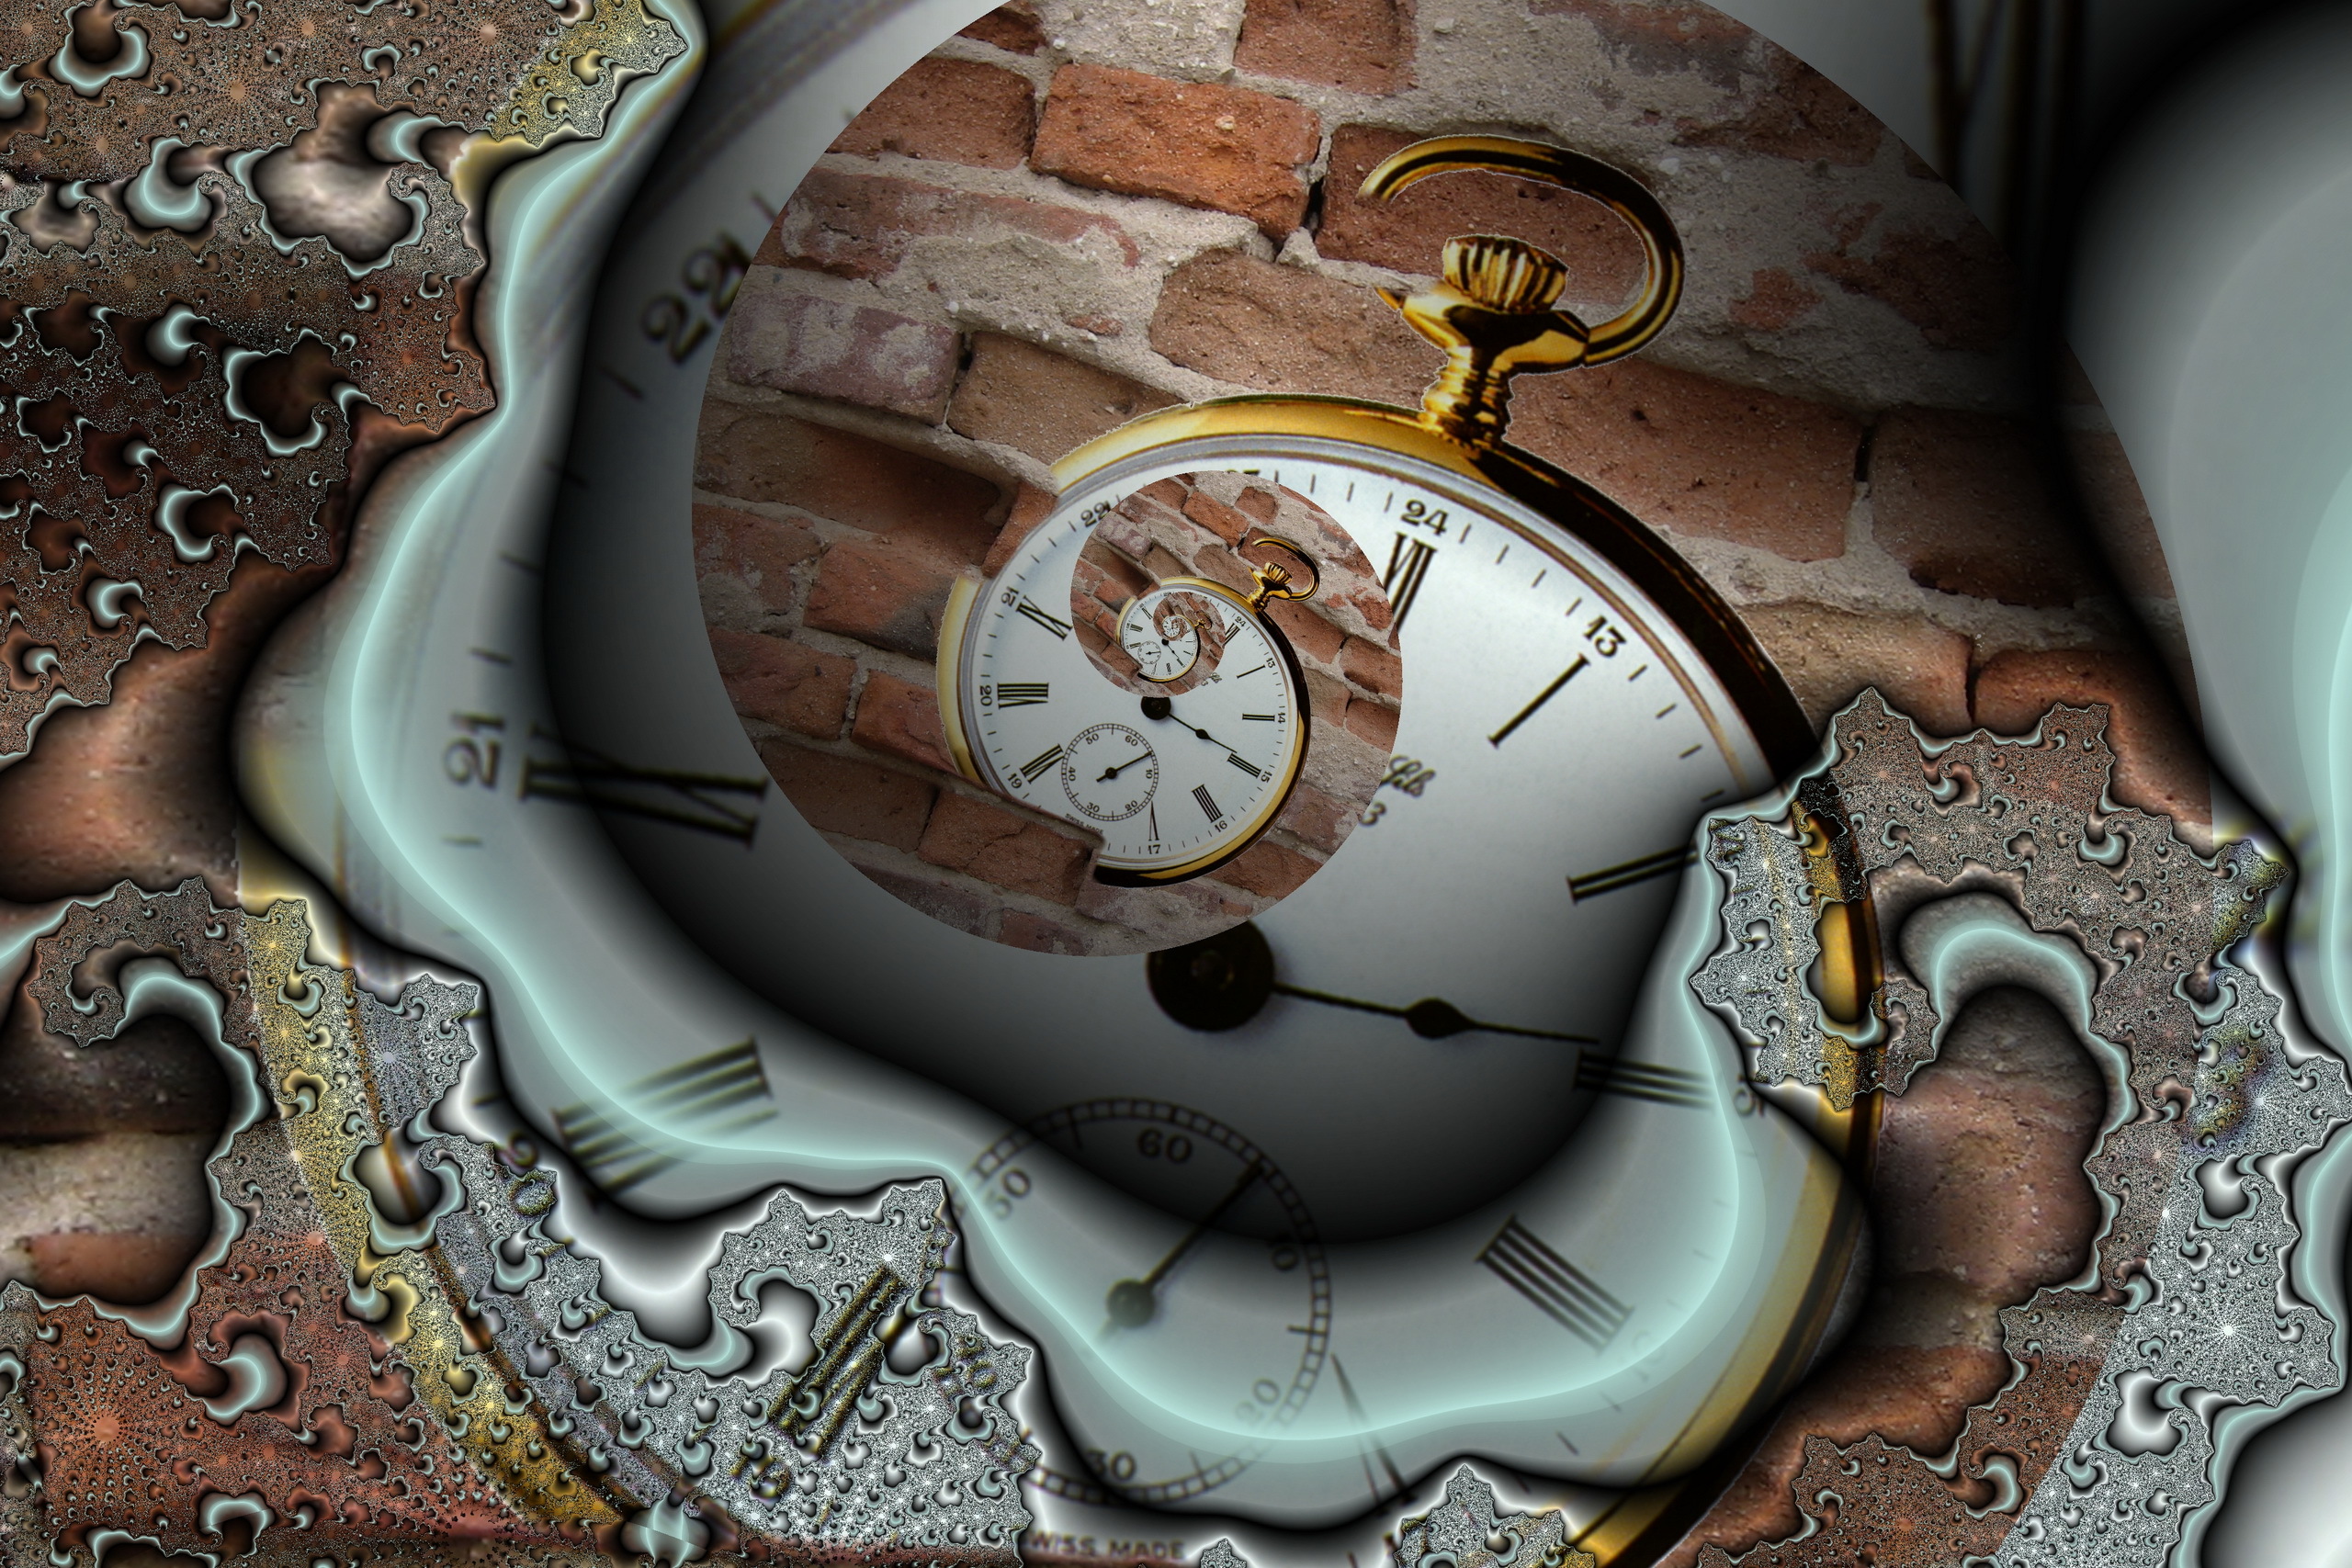 Картинку про часы. Необычные часы. Сказочные часы. Иллюстрации с часами. Магические часы.